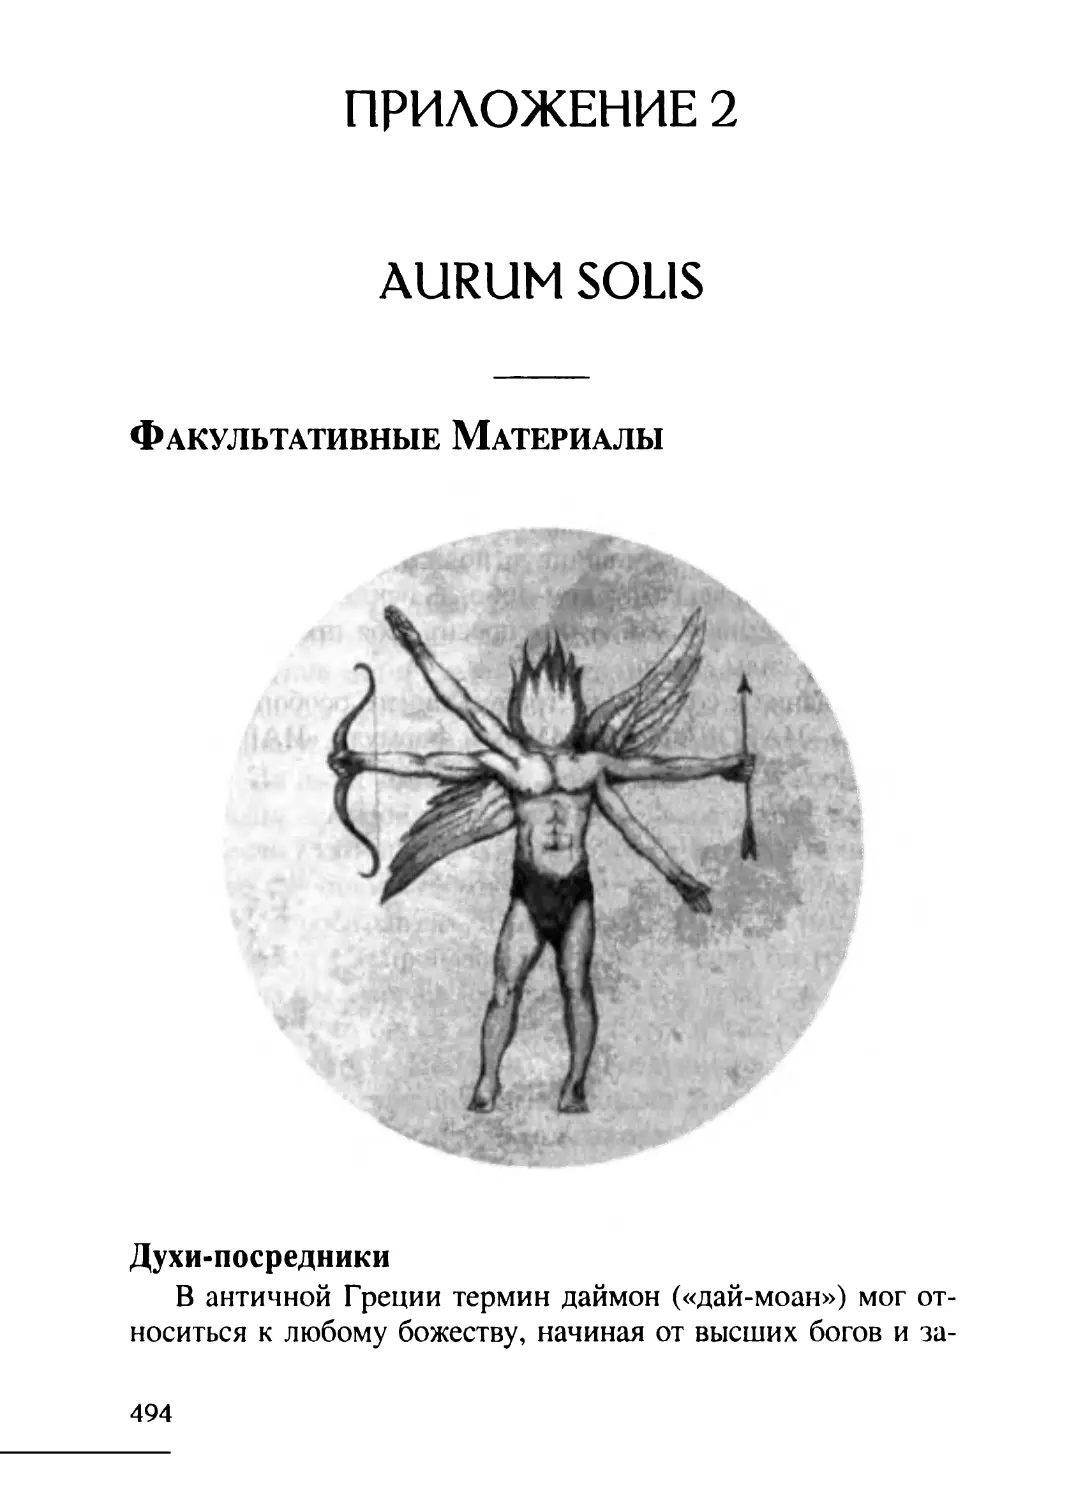 Приложение 2. Aurum Solis